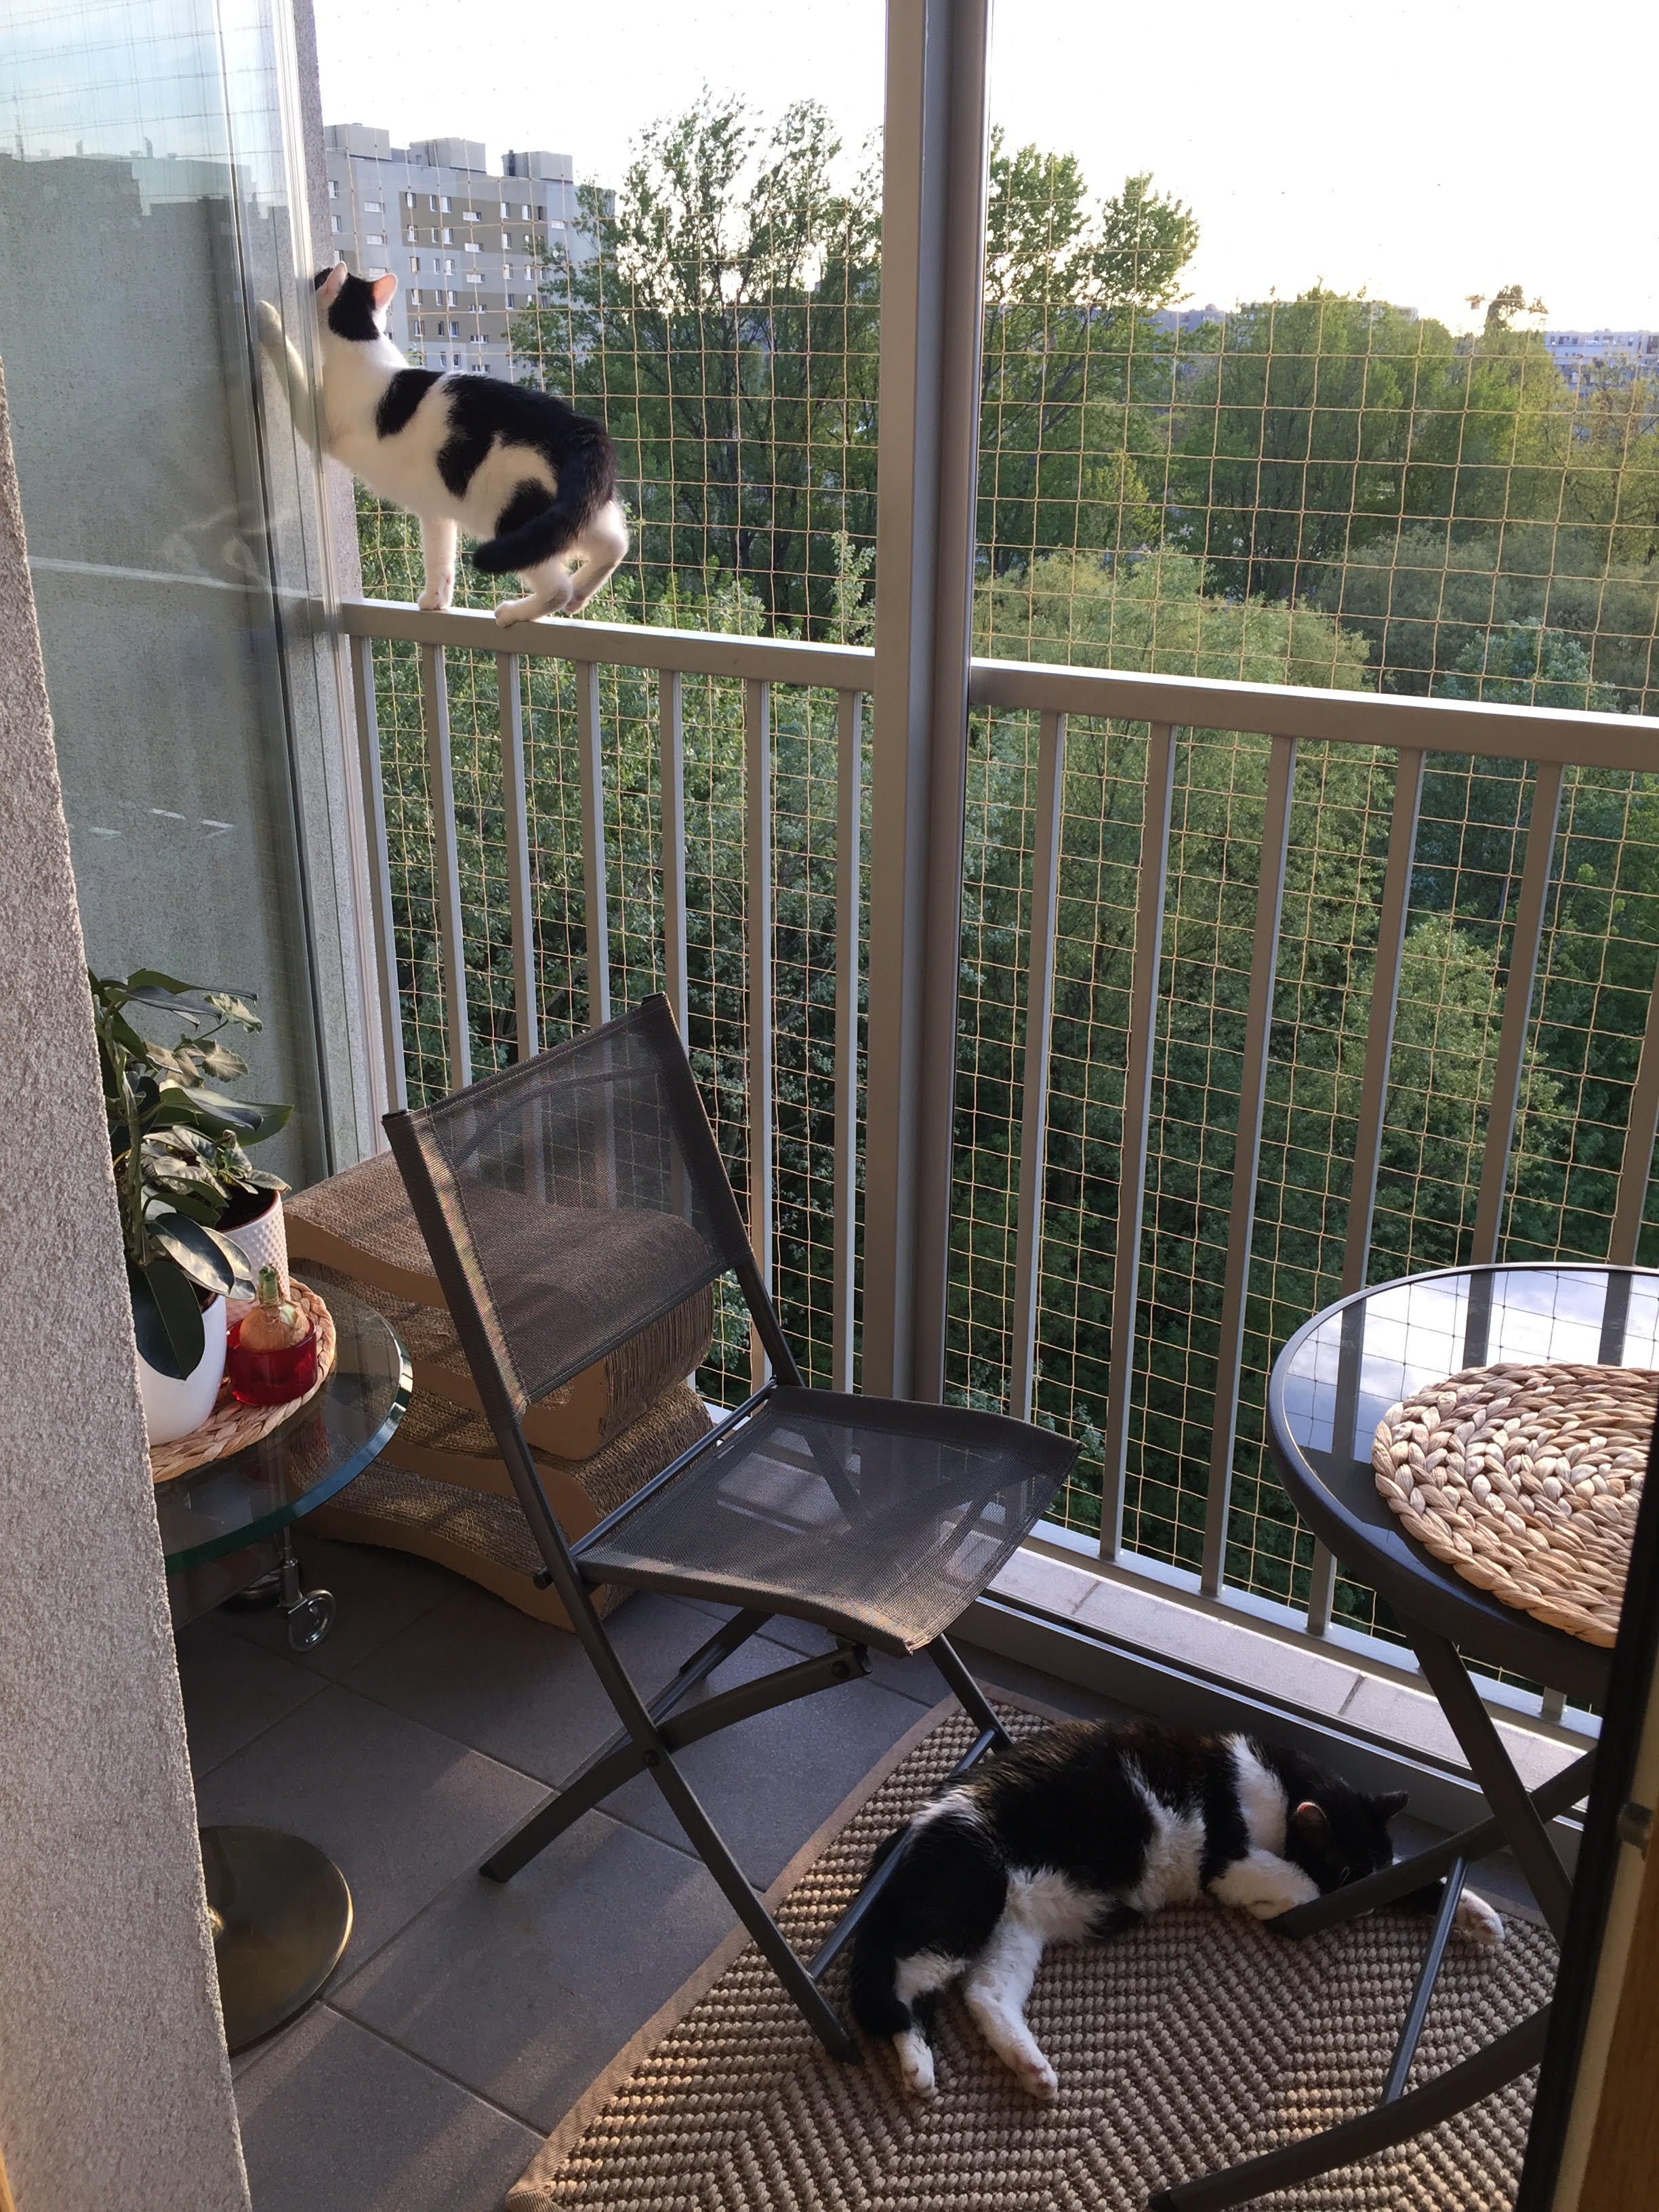 Zestaw 3x2m bez wiercenia z siatka na balkon dla kota. Kocia siatka balkonowa oczko 50x50mm. 